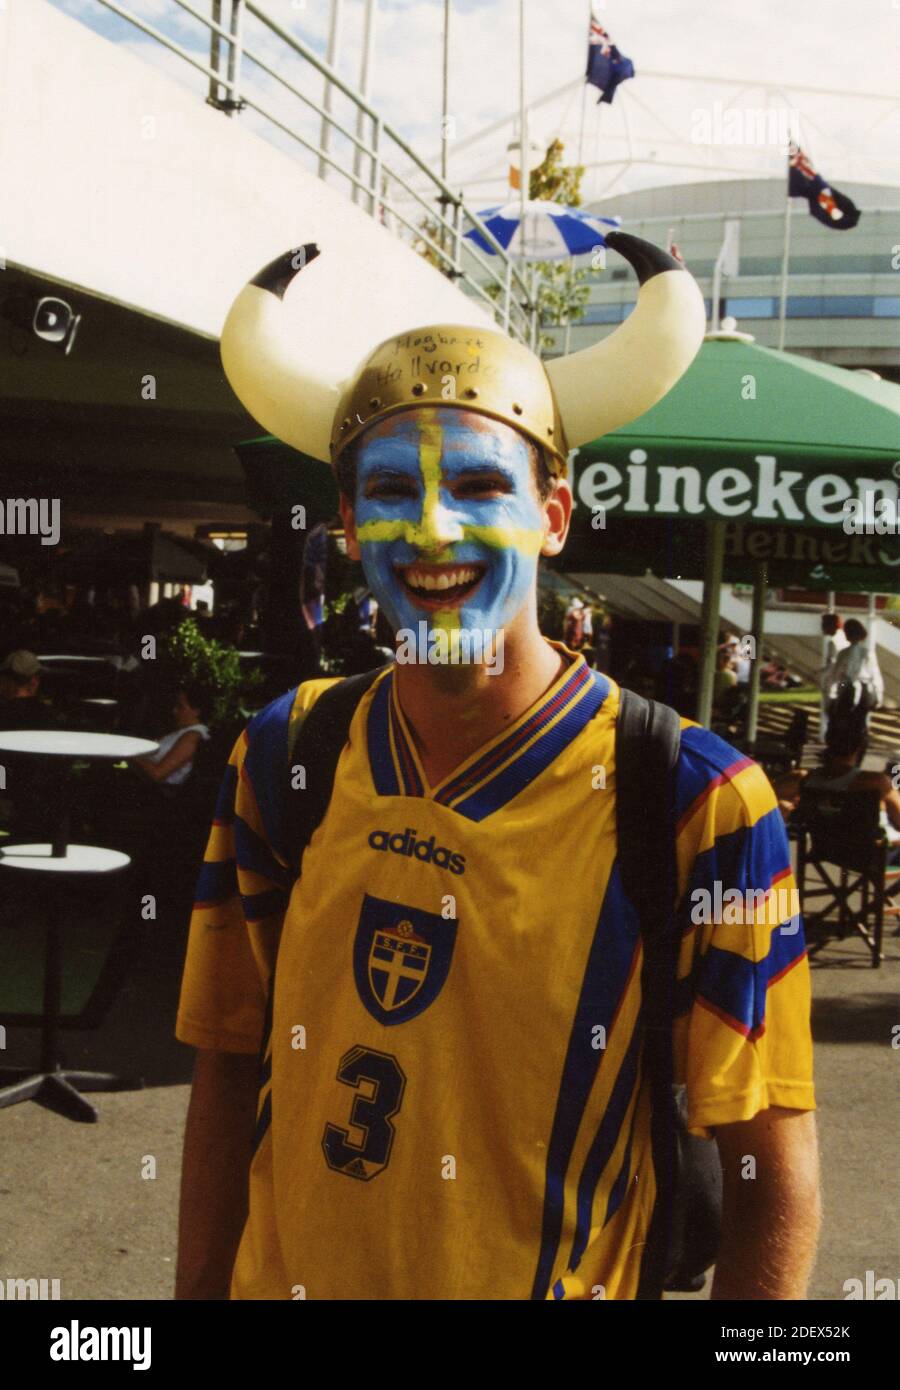 Soutien suédois à la coupe Davis, années 1990 Banque D'Images